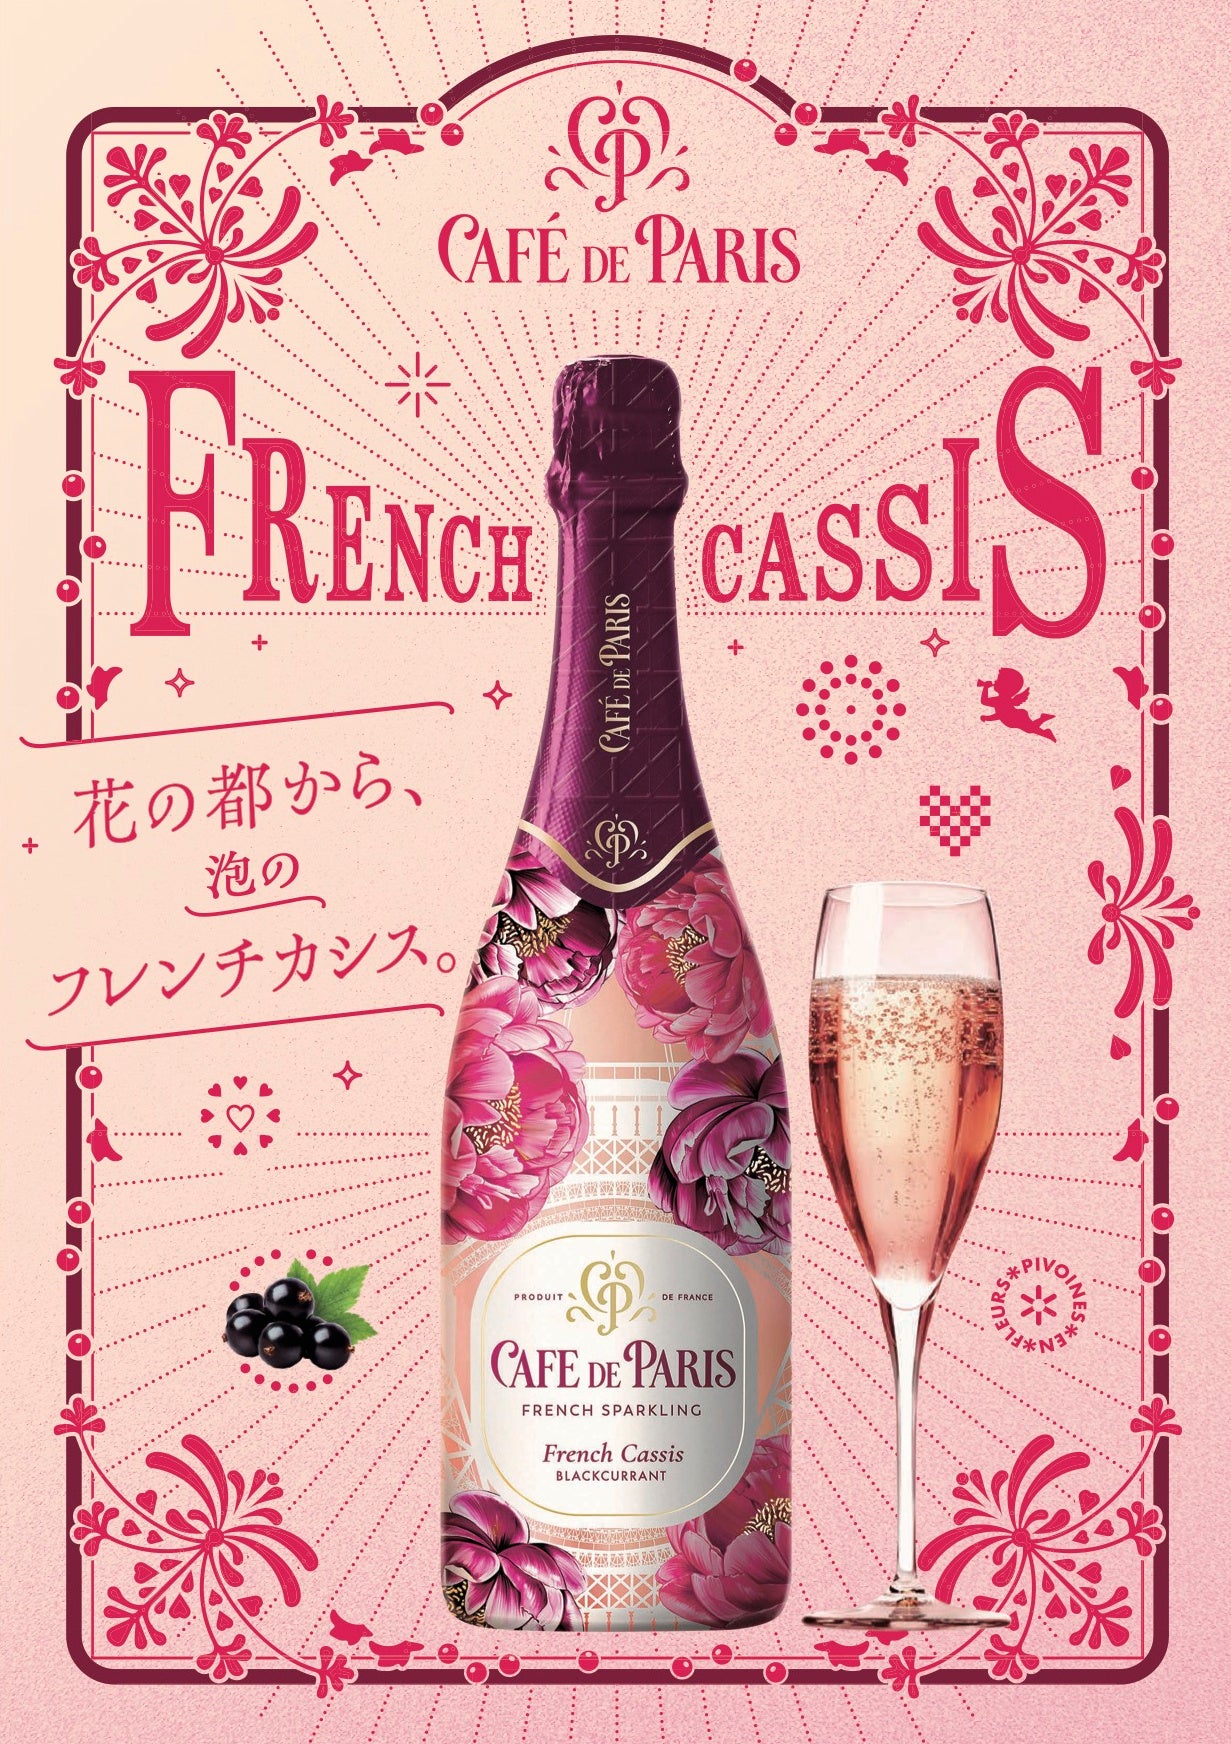 フランス産スパークリングワイン「カフェ・ド・パリ」からパリらしい華やかさや活気を表現した「カフェ・ド・...